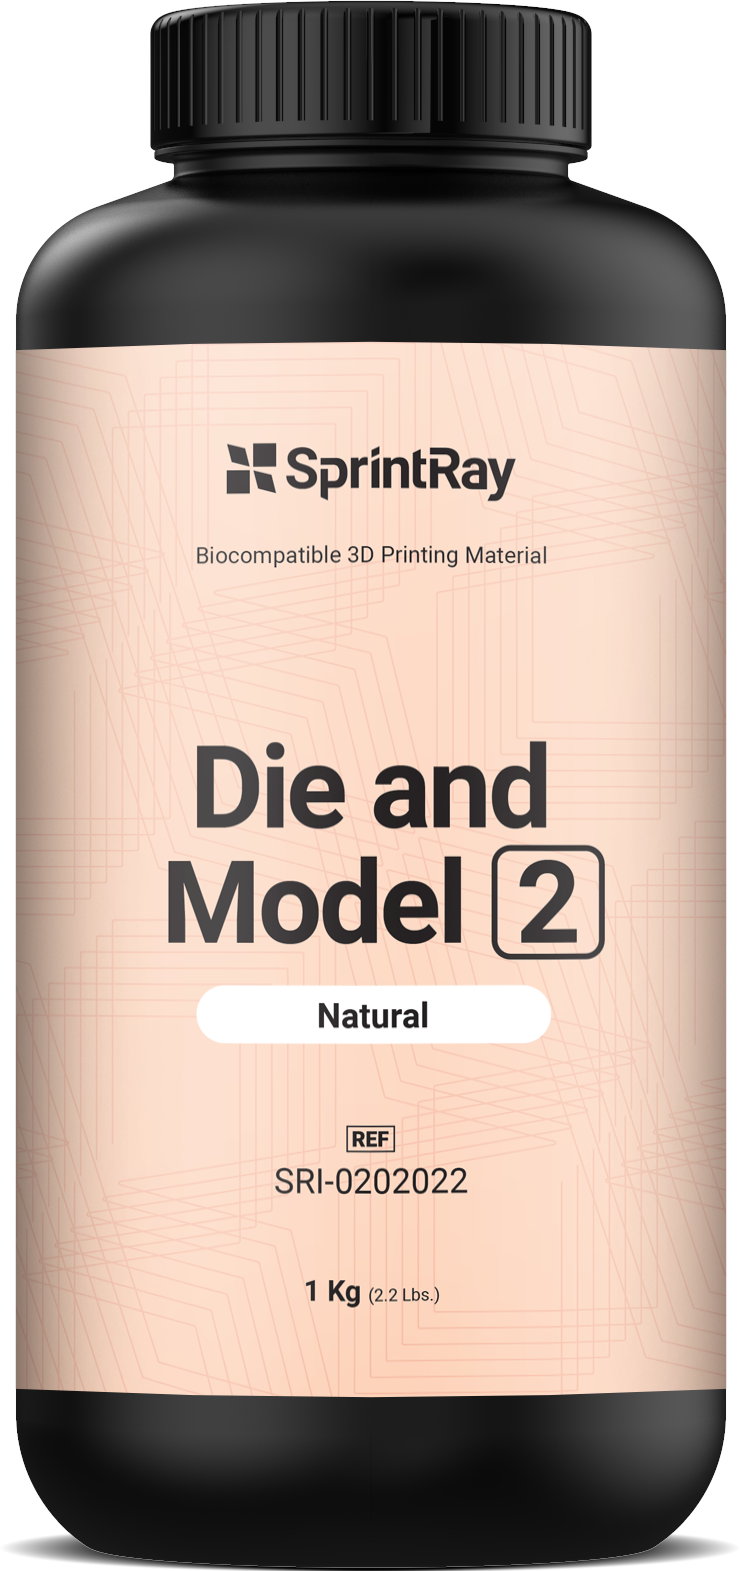 SprintRay Die and Model Natural 2 – Voxel Dental